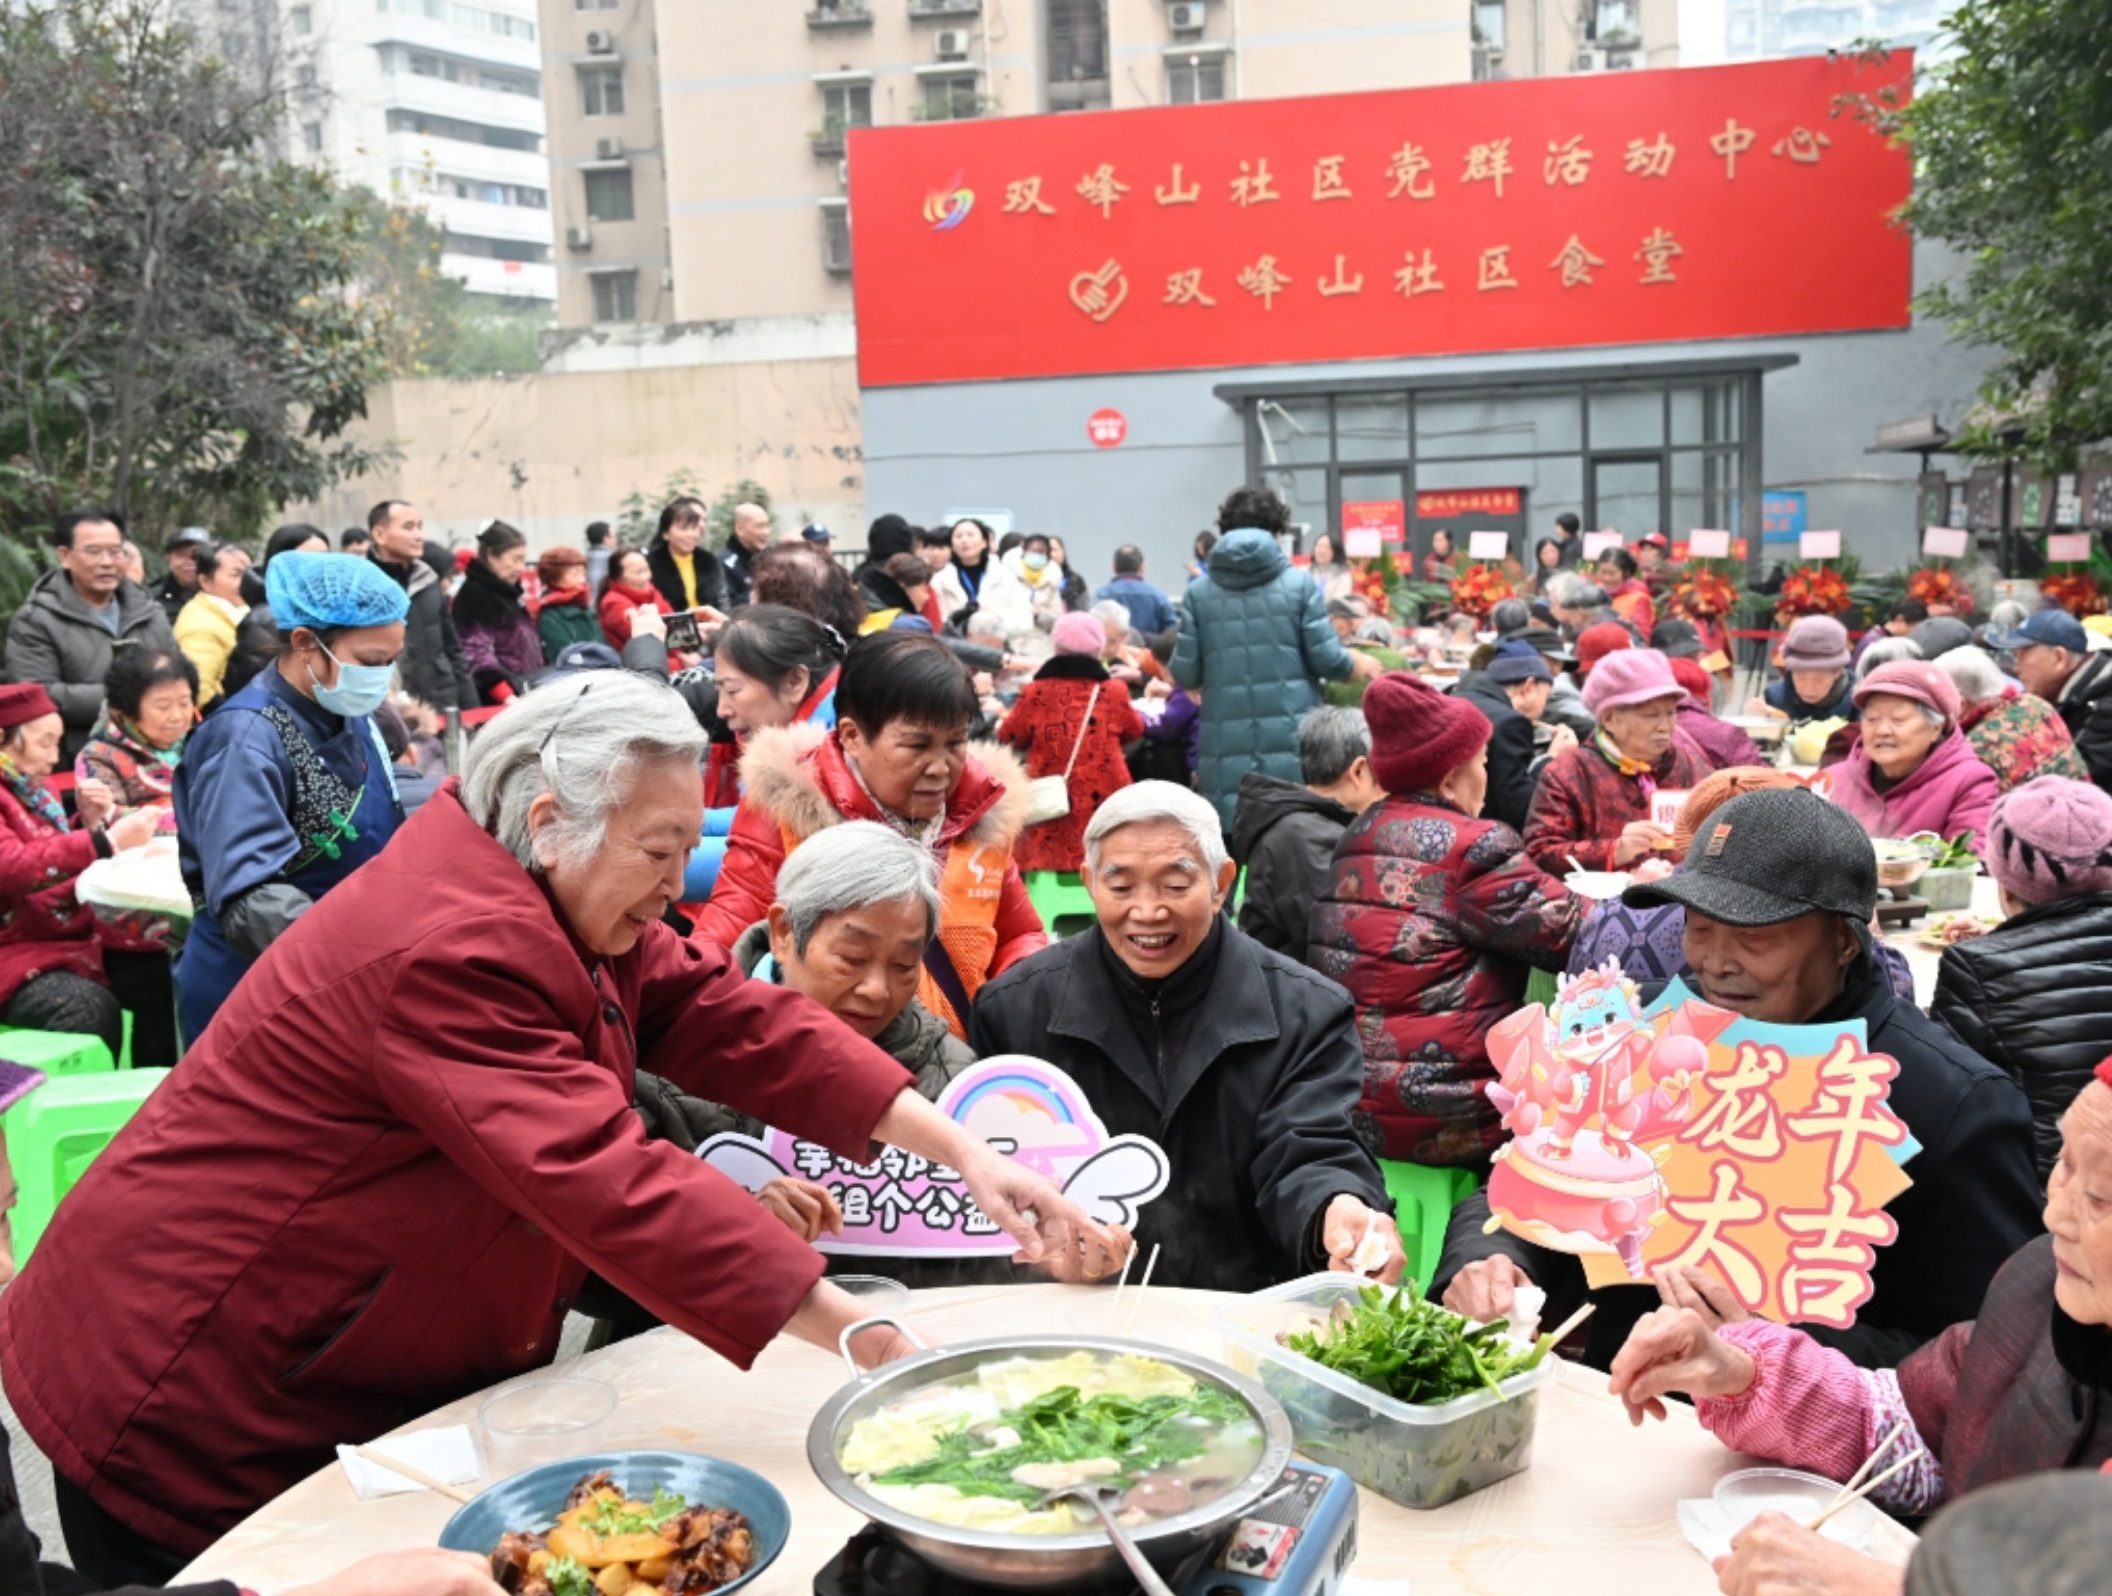 老人们聚在一起品美食、聊家常。 首席记者 郭旭 摄 .jpg